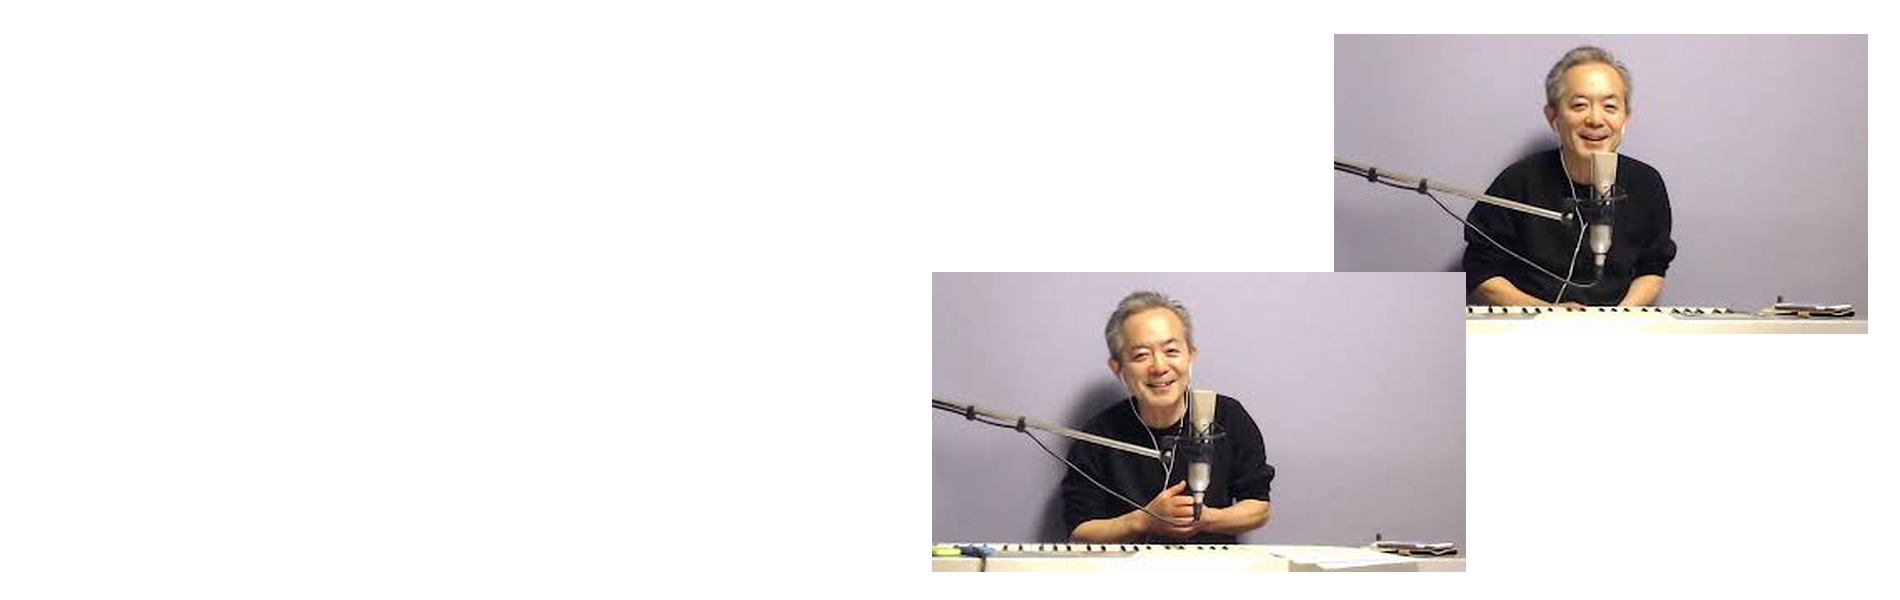 KABUTO MUSIC Official Site – 作曲家KABUTO（加太好晴）制作のヒーリング音楽とサイマティクス音響振動療法マナーズサウンド をMixしたマナーズミュージックCDを制作 カブトミュージックとマナーズサウンド